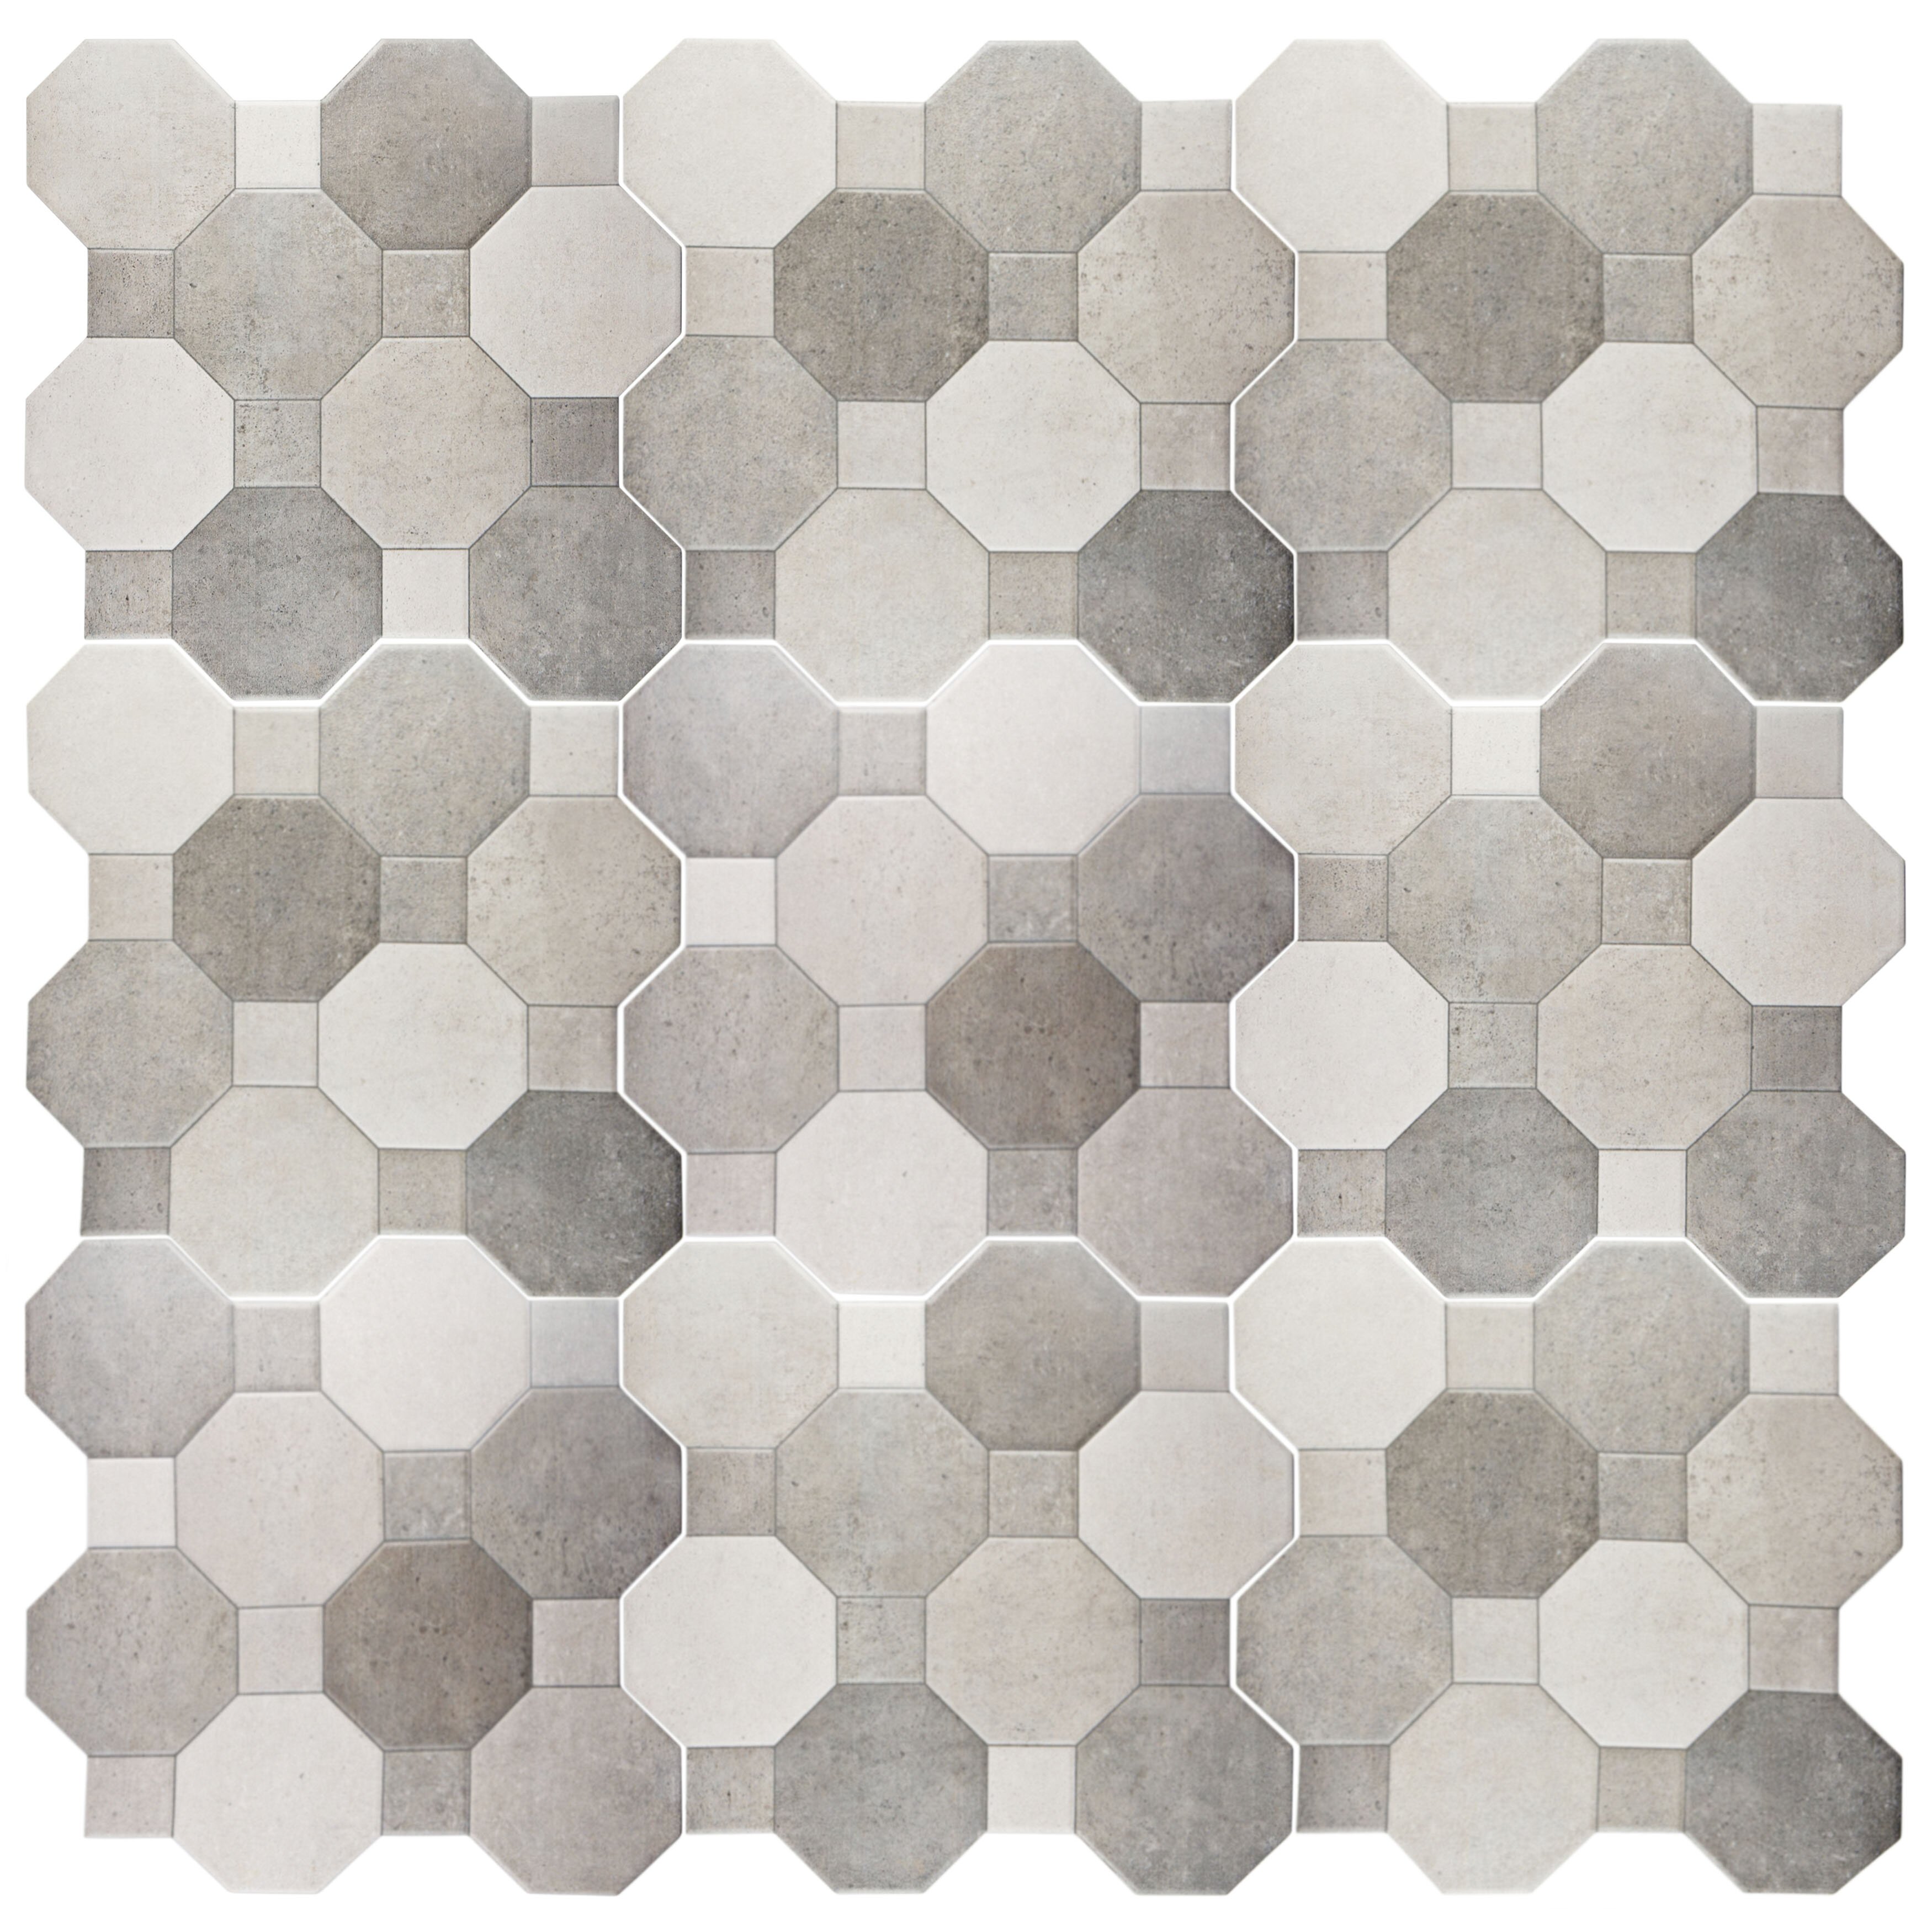 EliteTile Imagino 17 75 x 17 75 Ceramic Field Tile in 